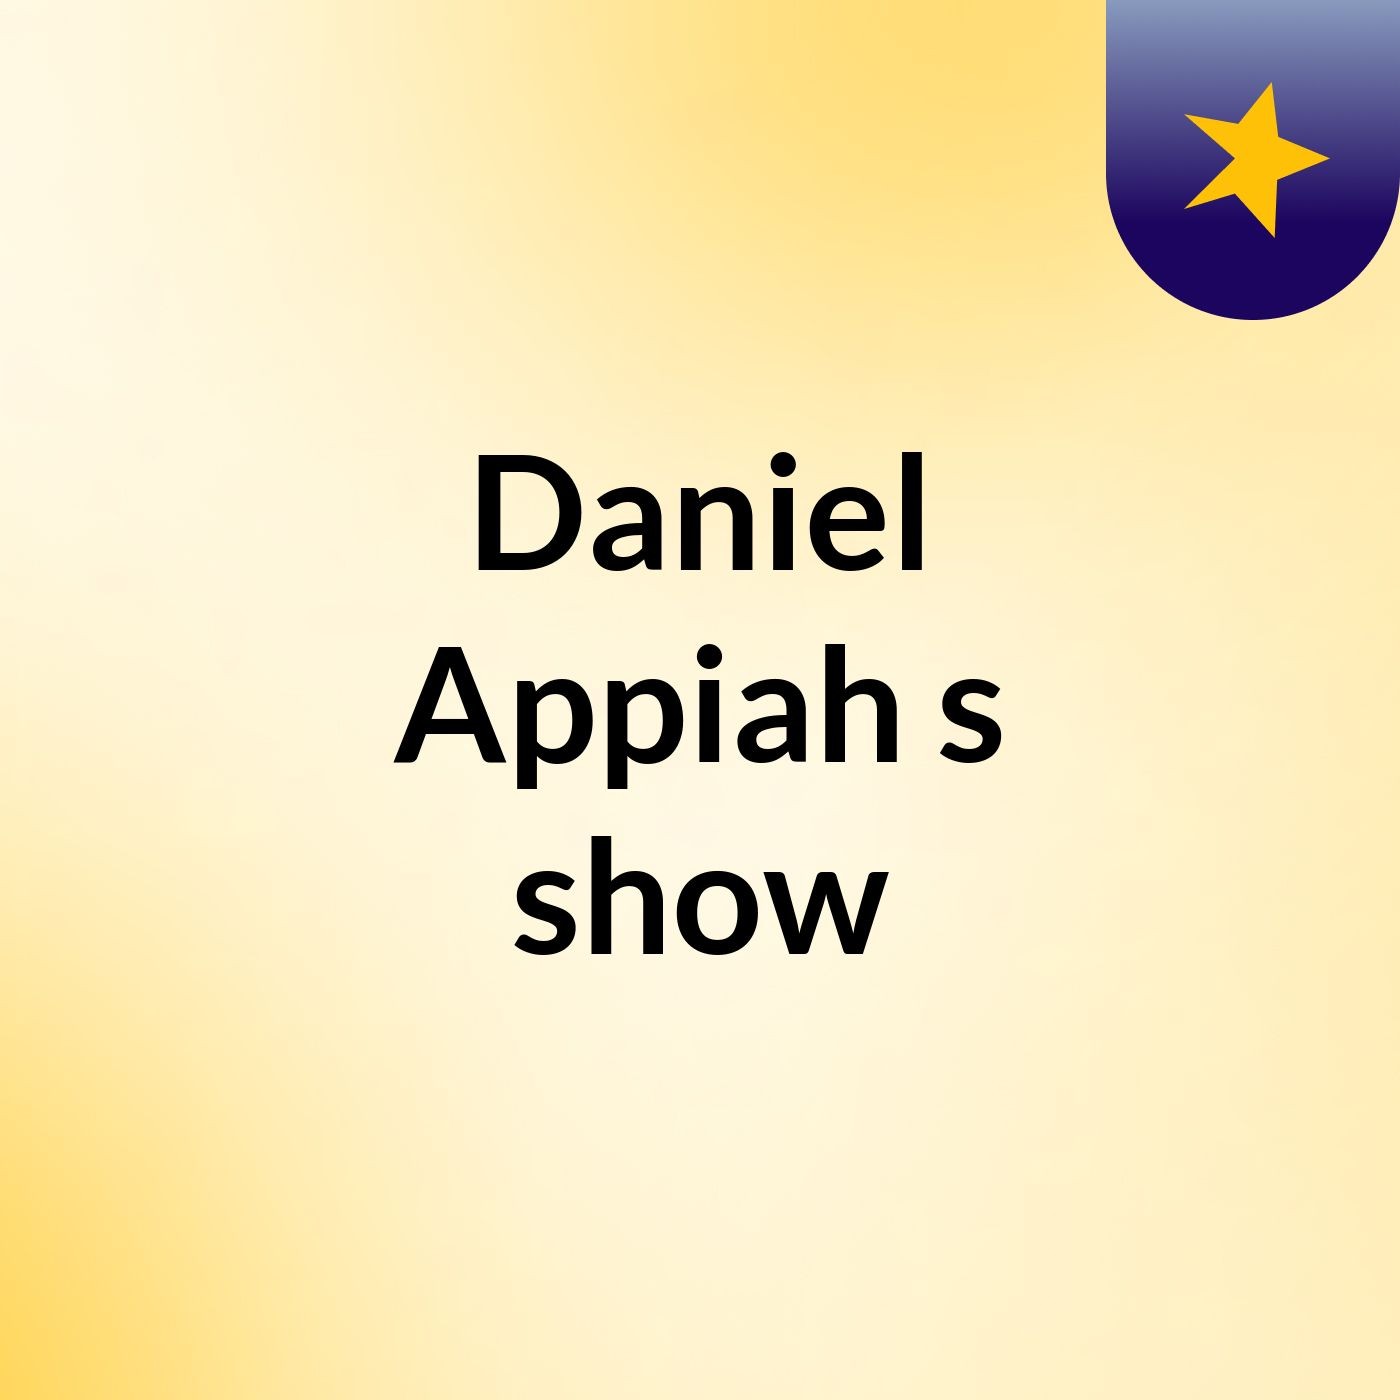 Episode 3 - Daniel Appiah's show